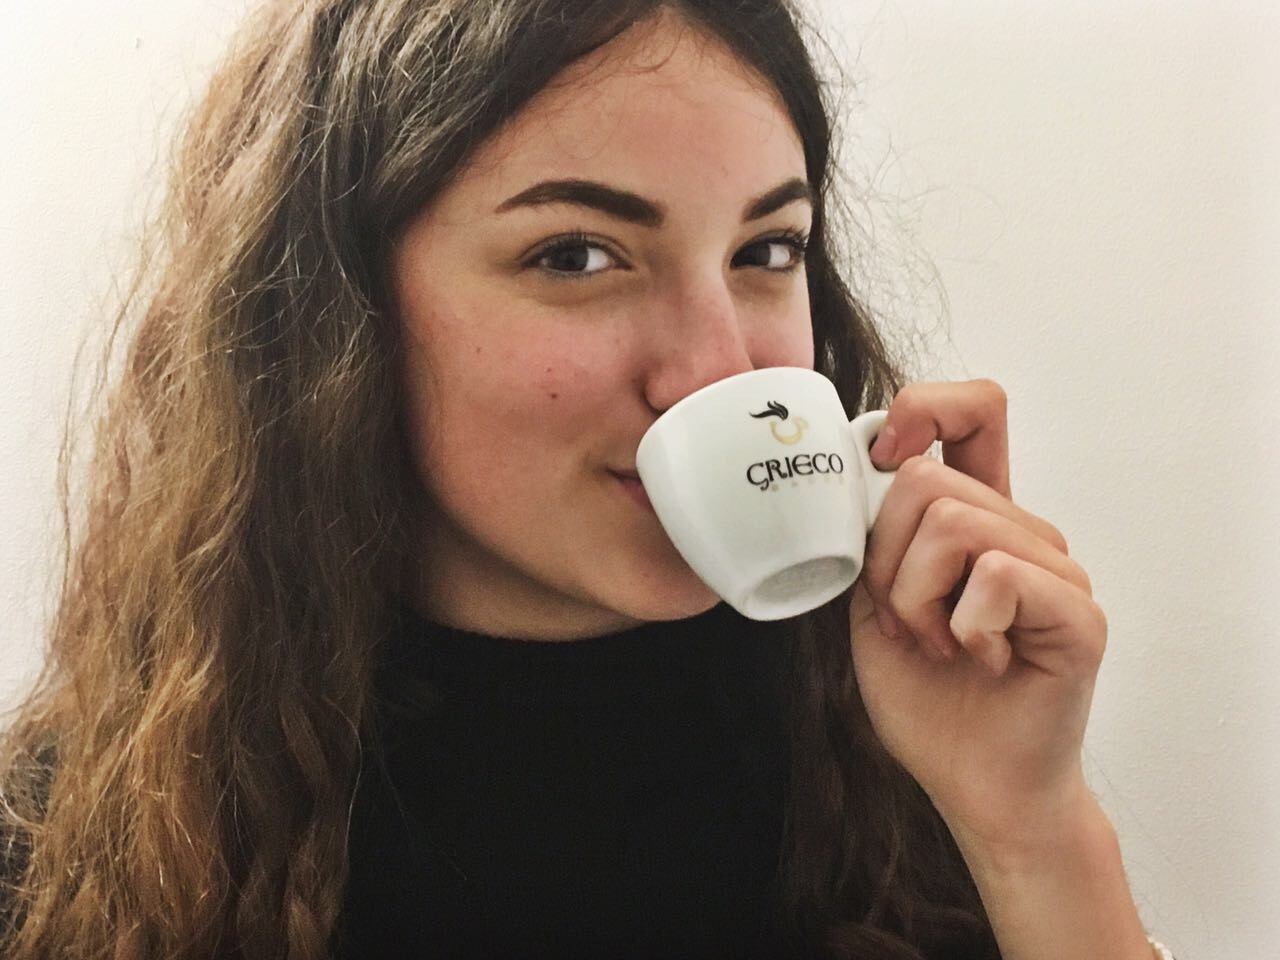 griego caffé selection 63 espresso aus matera - süditalien